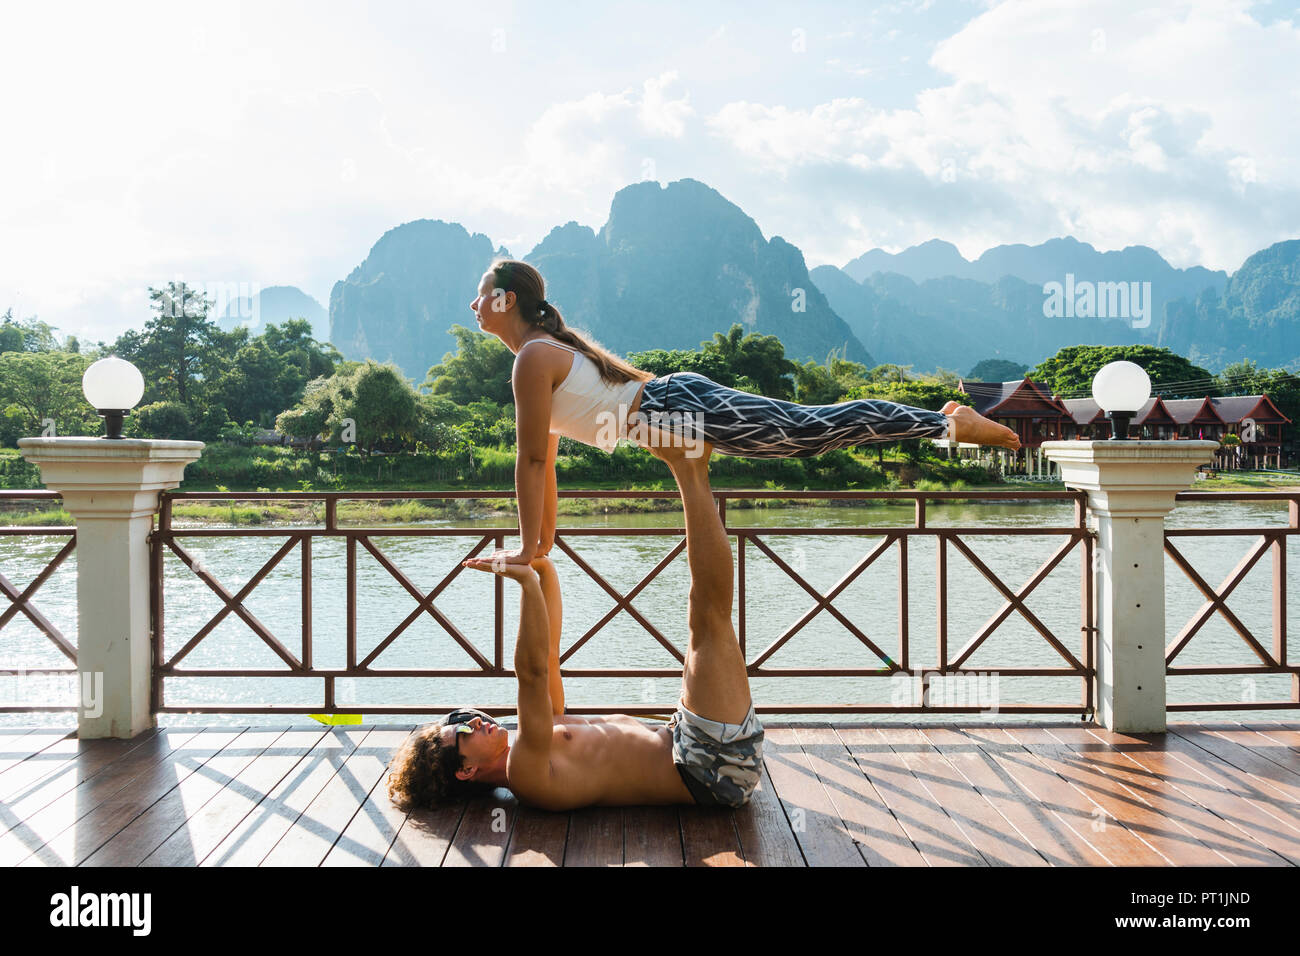 Le Laos, Vang Vieng, jeune couple faisant l'acro-yoga sur une terrasse Banque D'Images